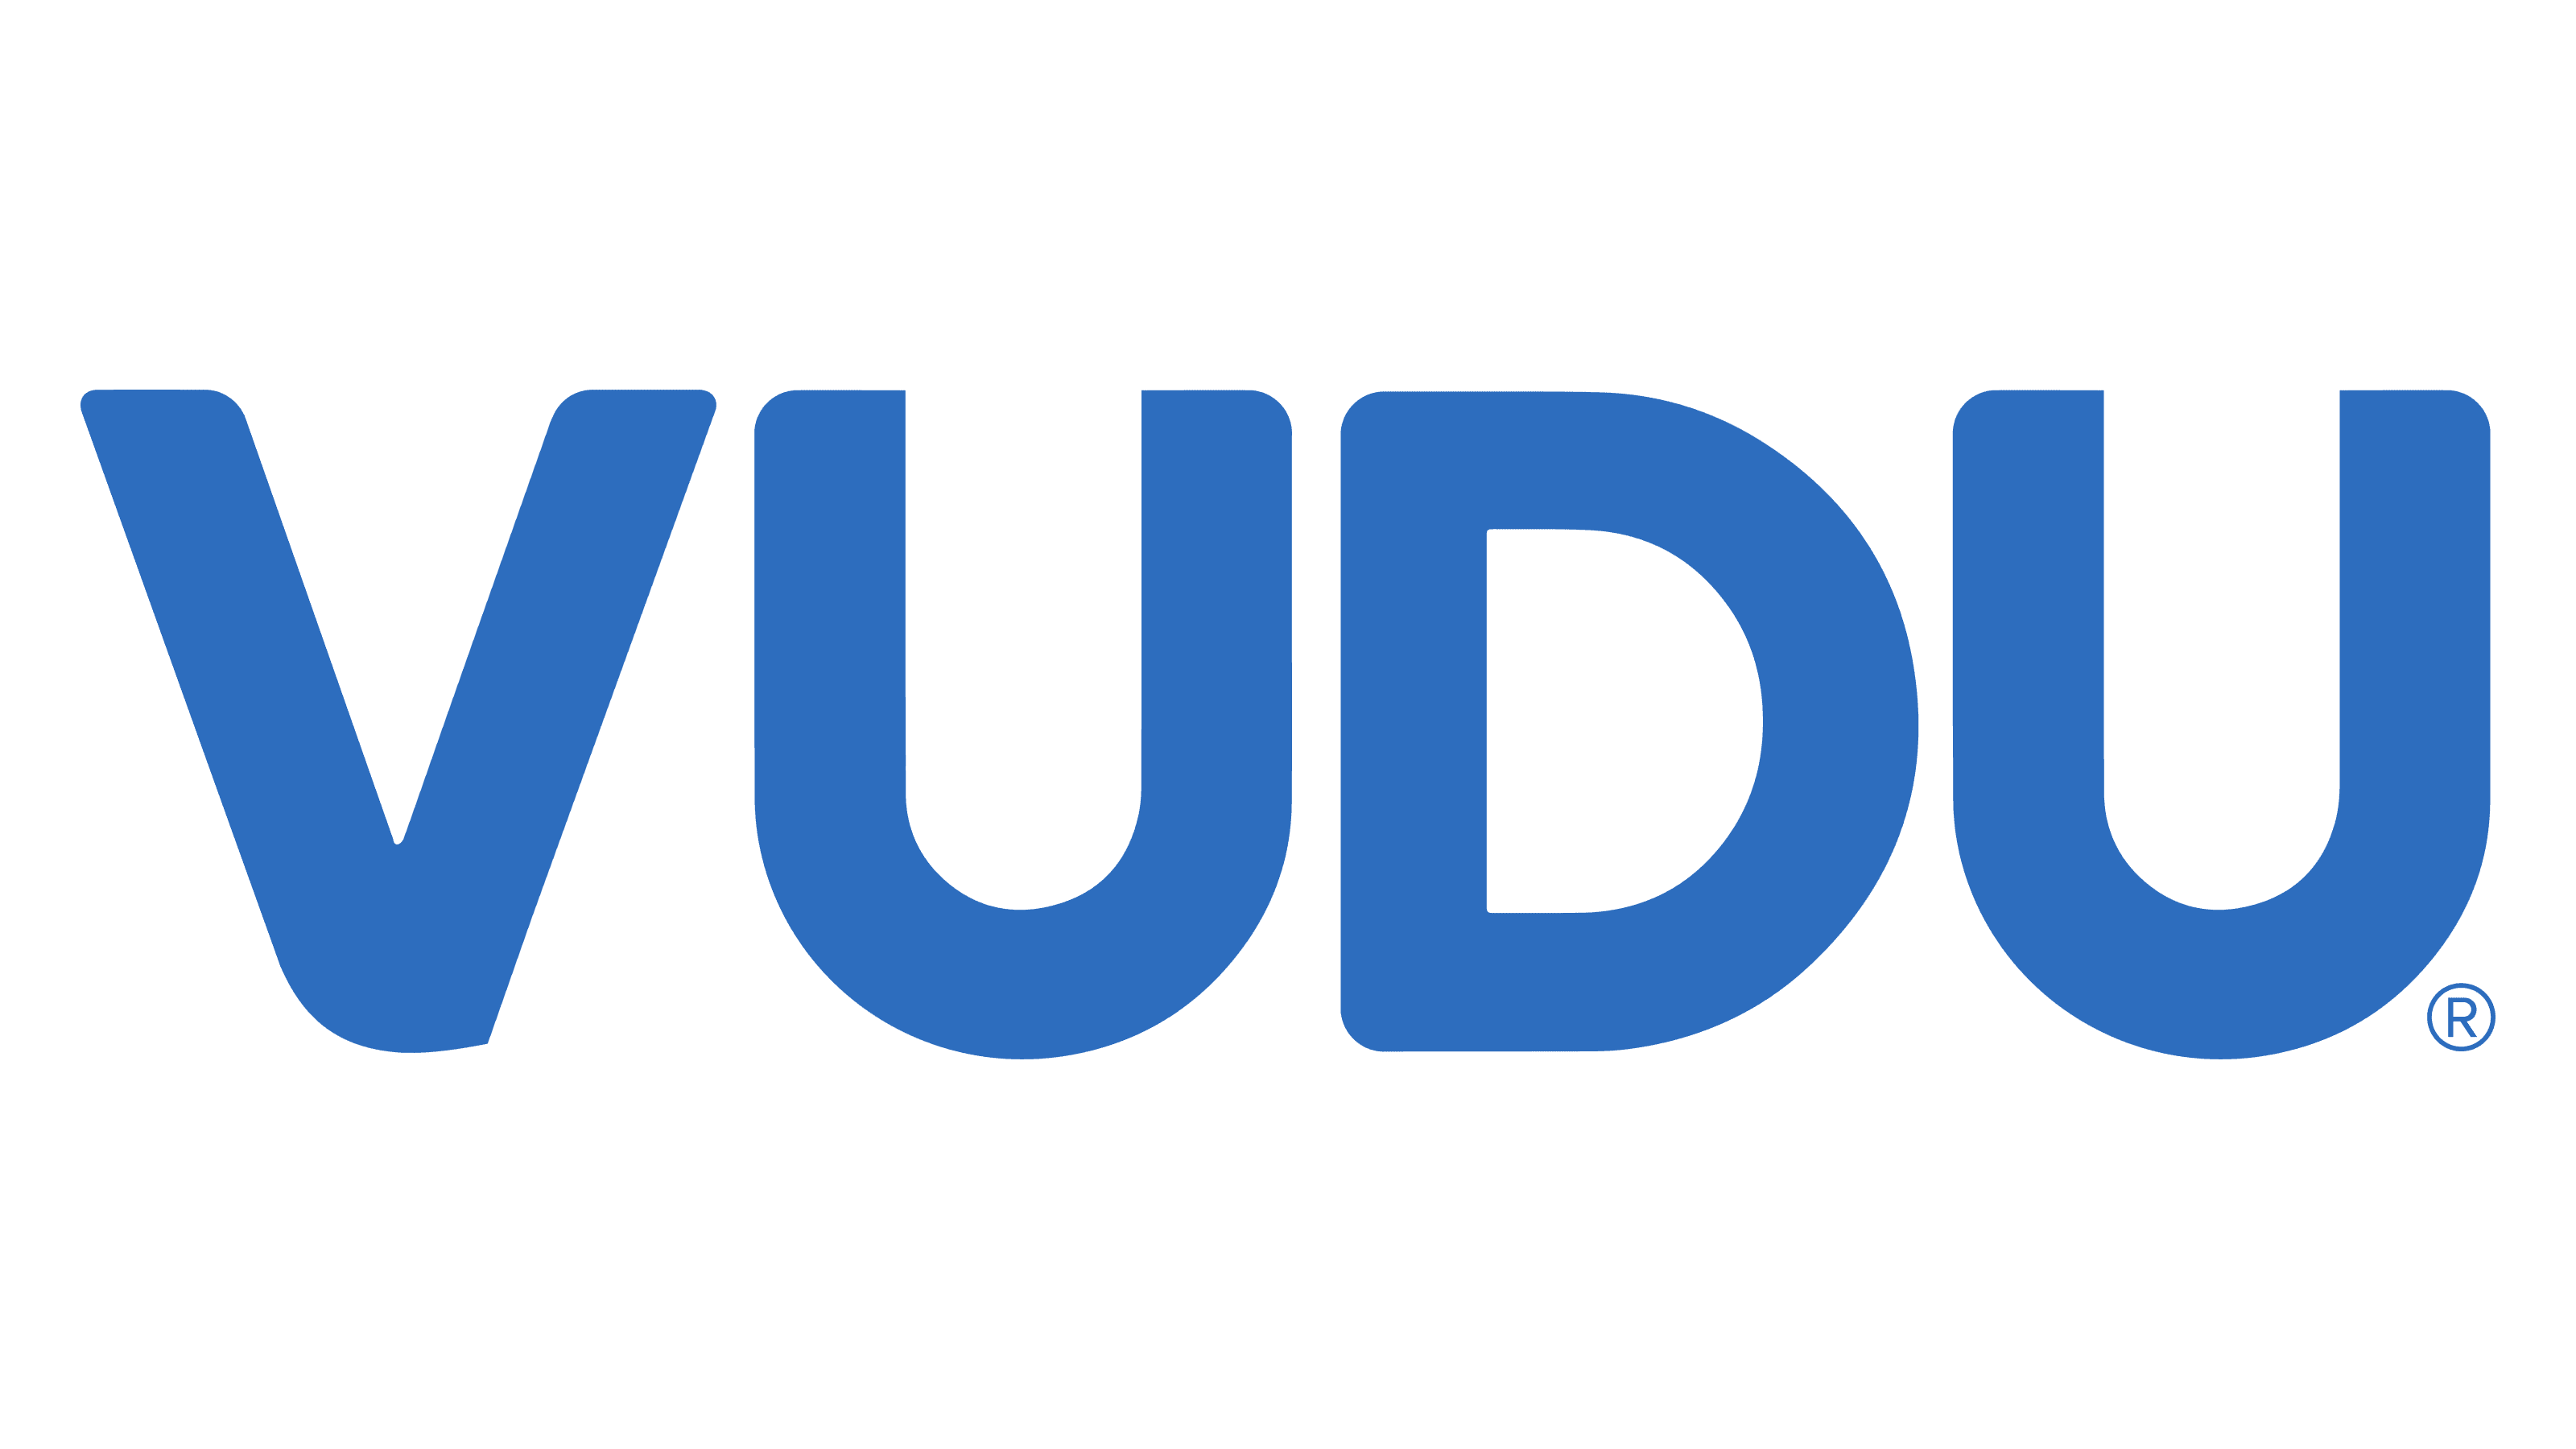 Vudu - Watch Battle of the Sexes